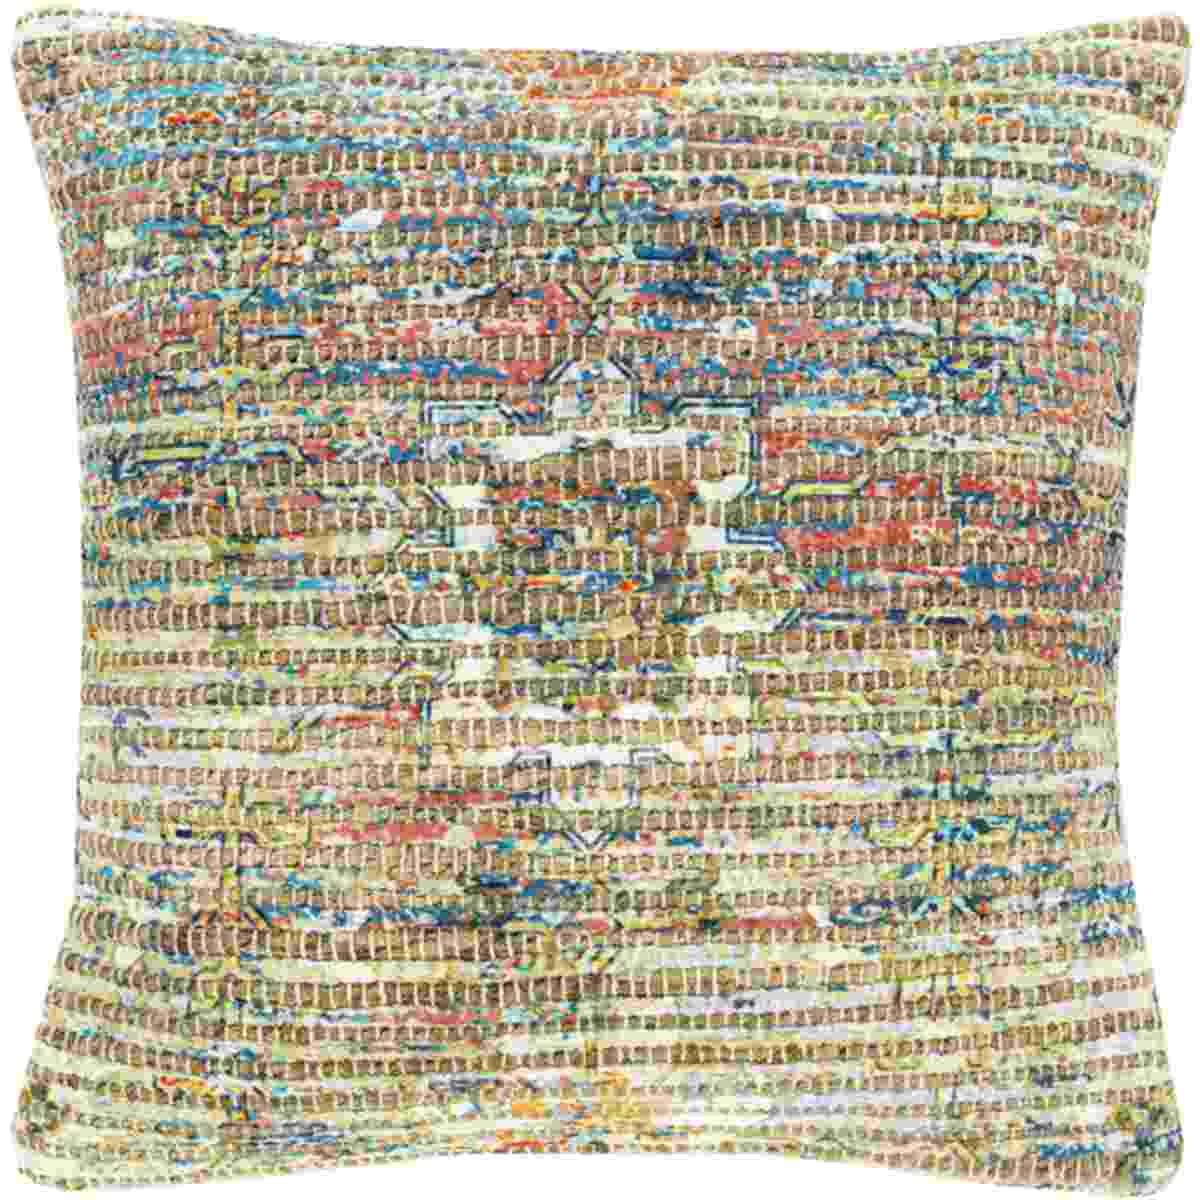 Surya Pillows CV012-1818P 18 x 18 Decorative Pillow